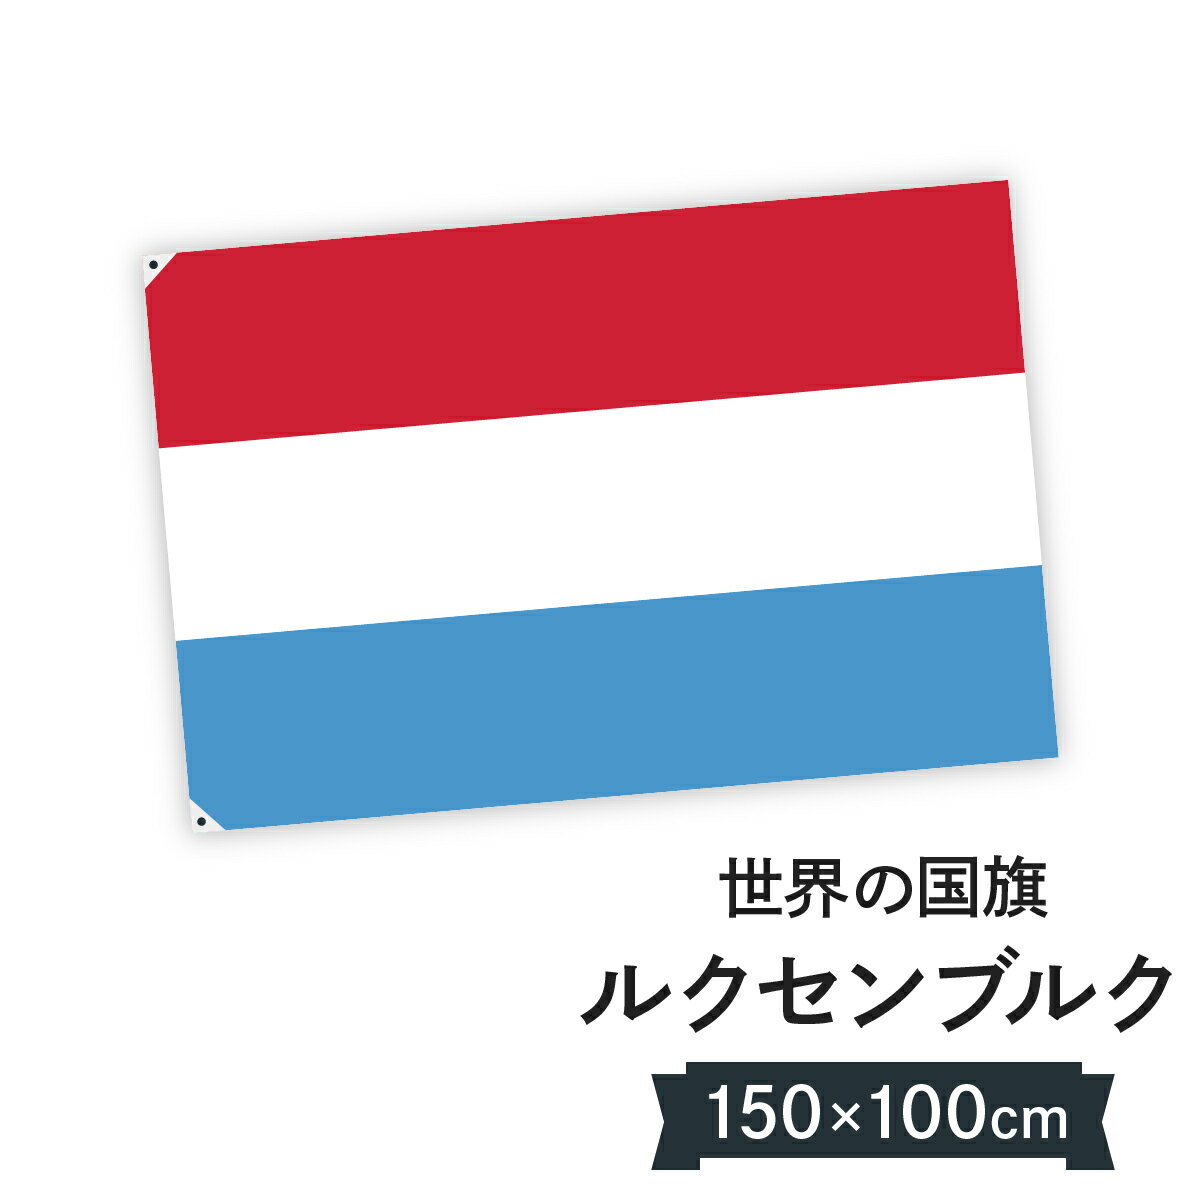 ルクセンブルク大公国 国旗 W150cm H100cm